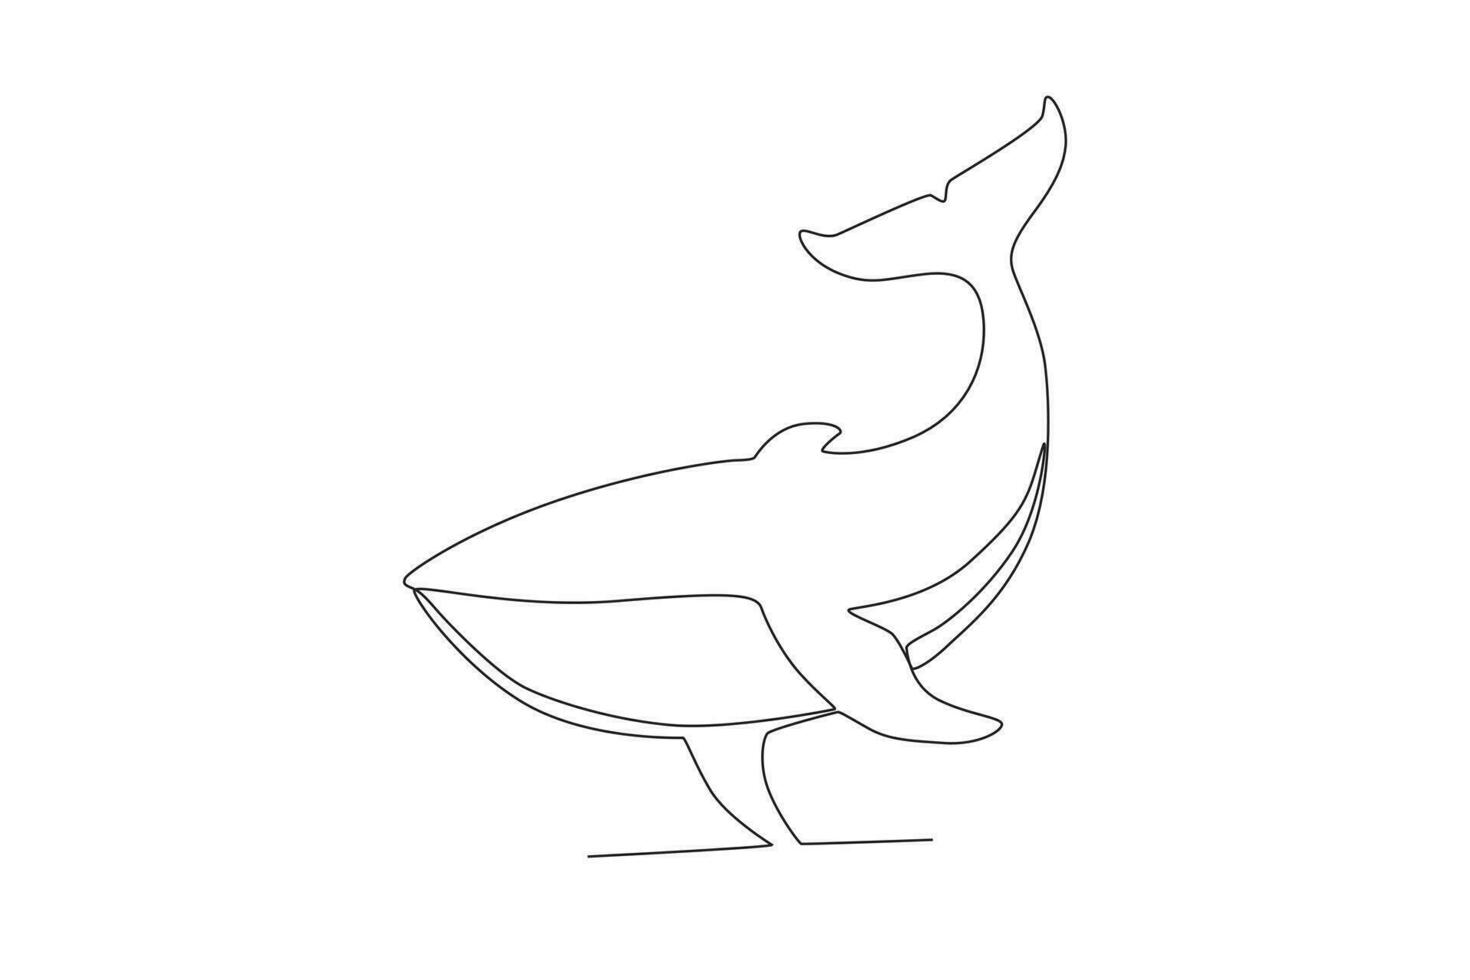 single een lijn tekening van een walvis. doorlopend lijn trek ontwerp grafisch vector illustratie.